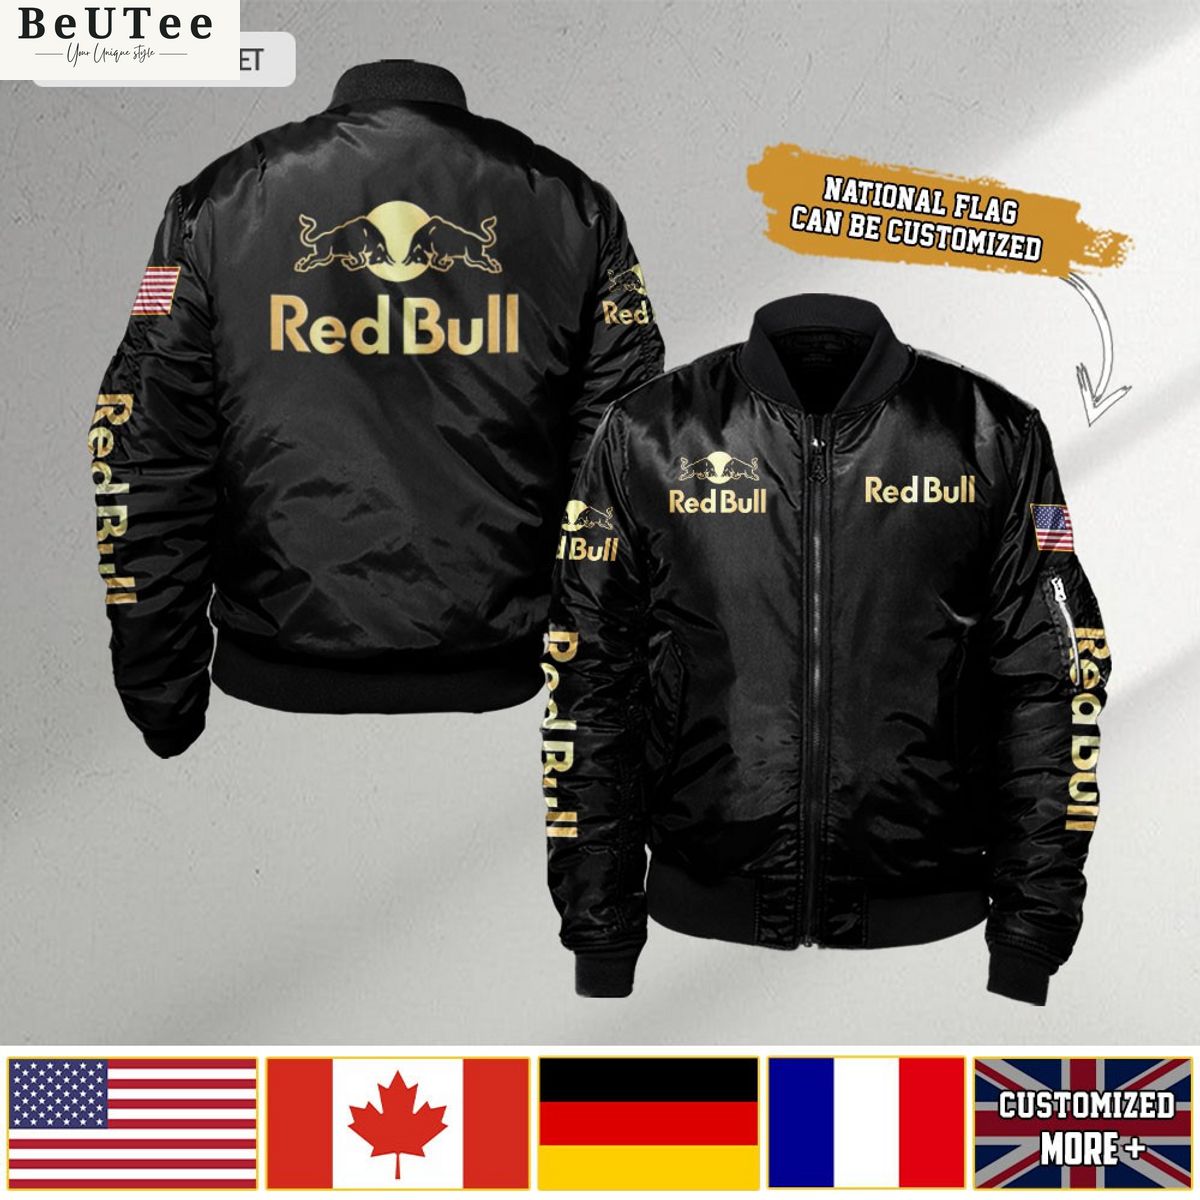 red bull custom flag 3d bomber jacket 1 uKfGi.jpg